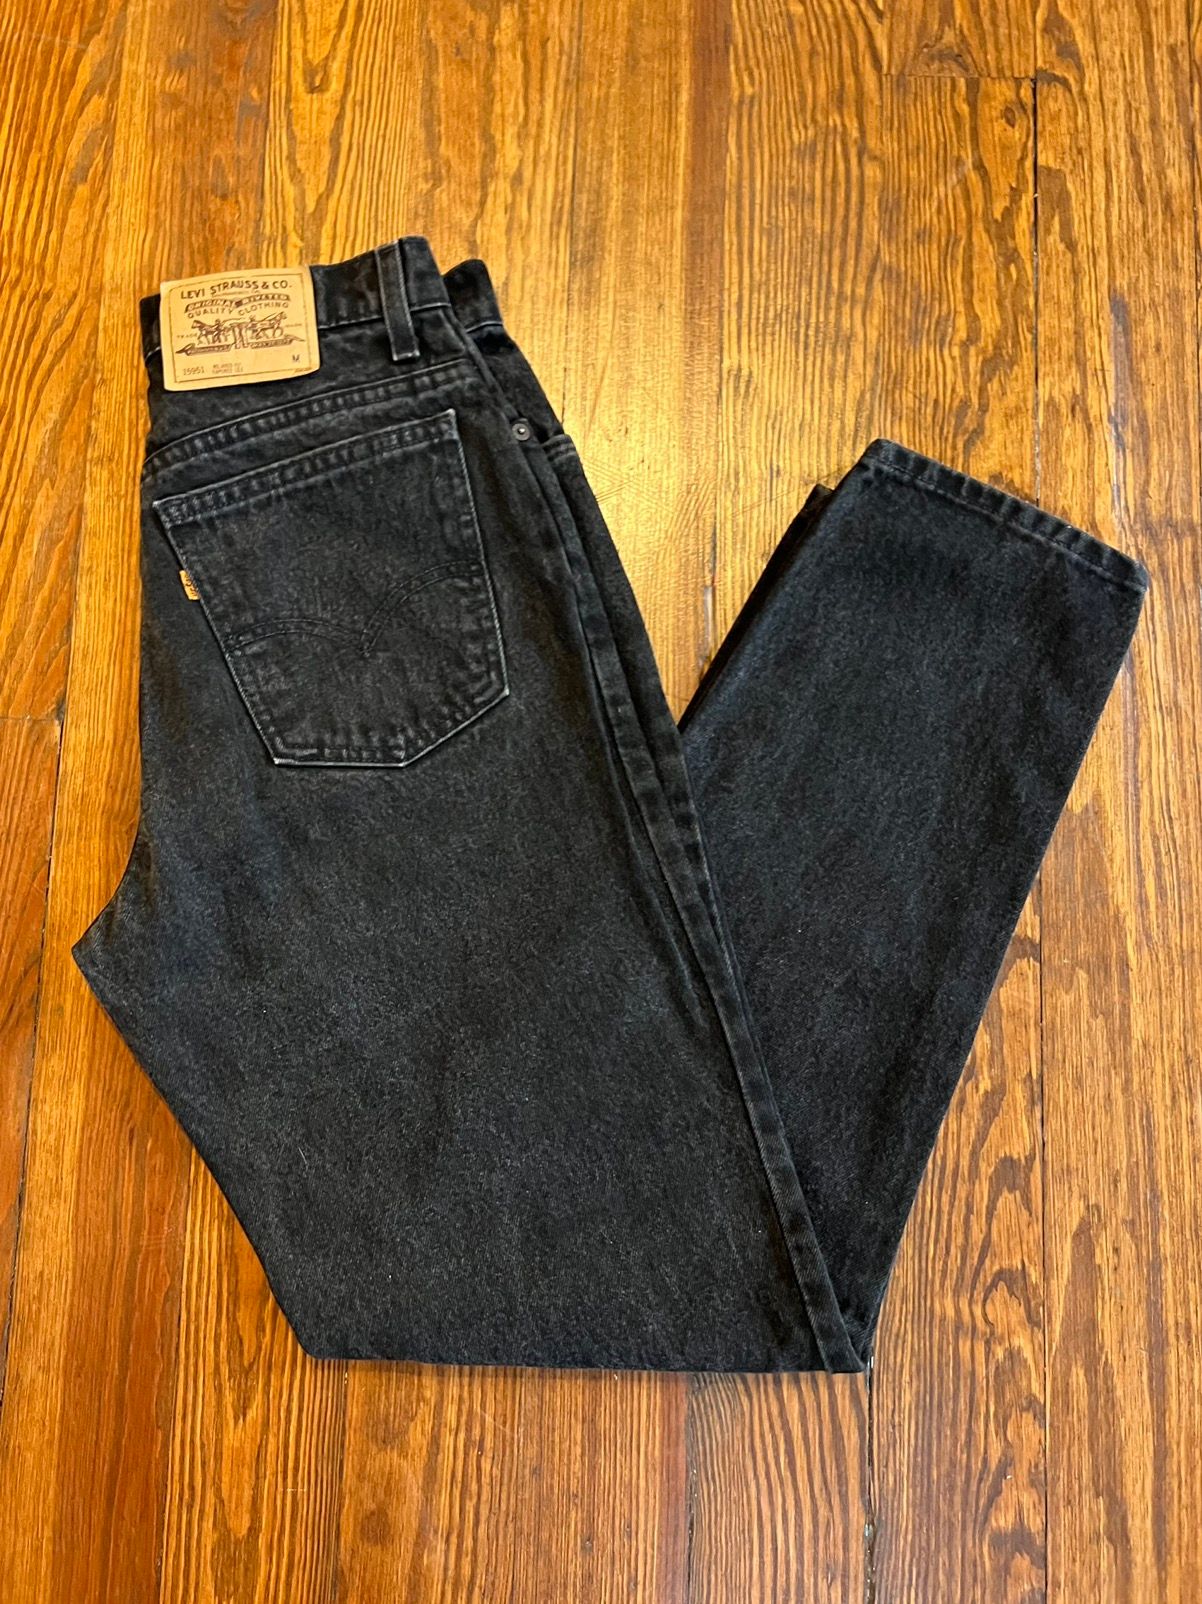 Vintage Vintage Levi’s 951 Black Denim Jeans Made in USA Size US 29 - 1 Preview